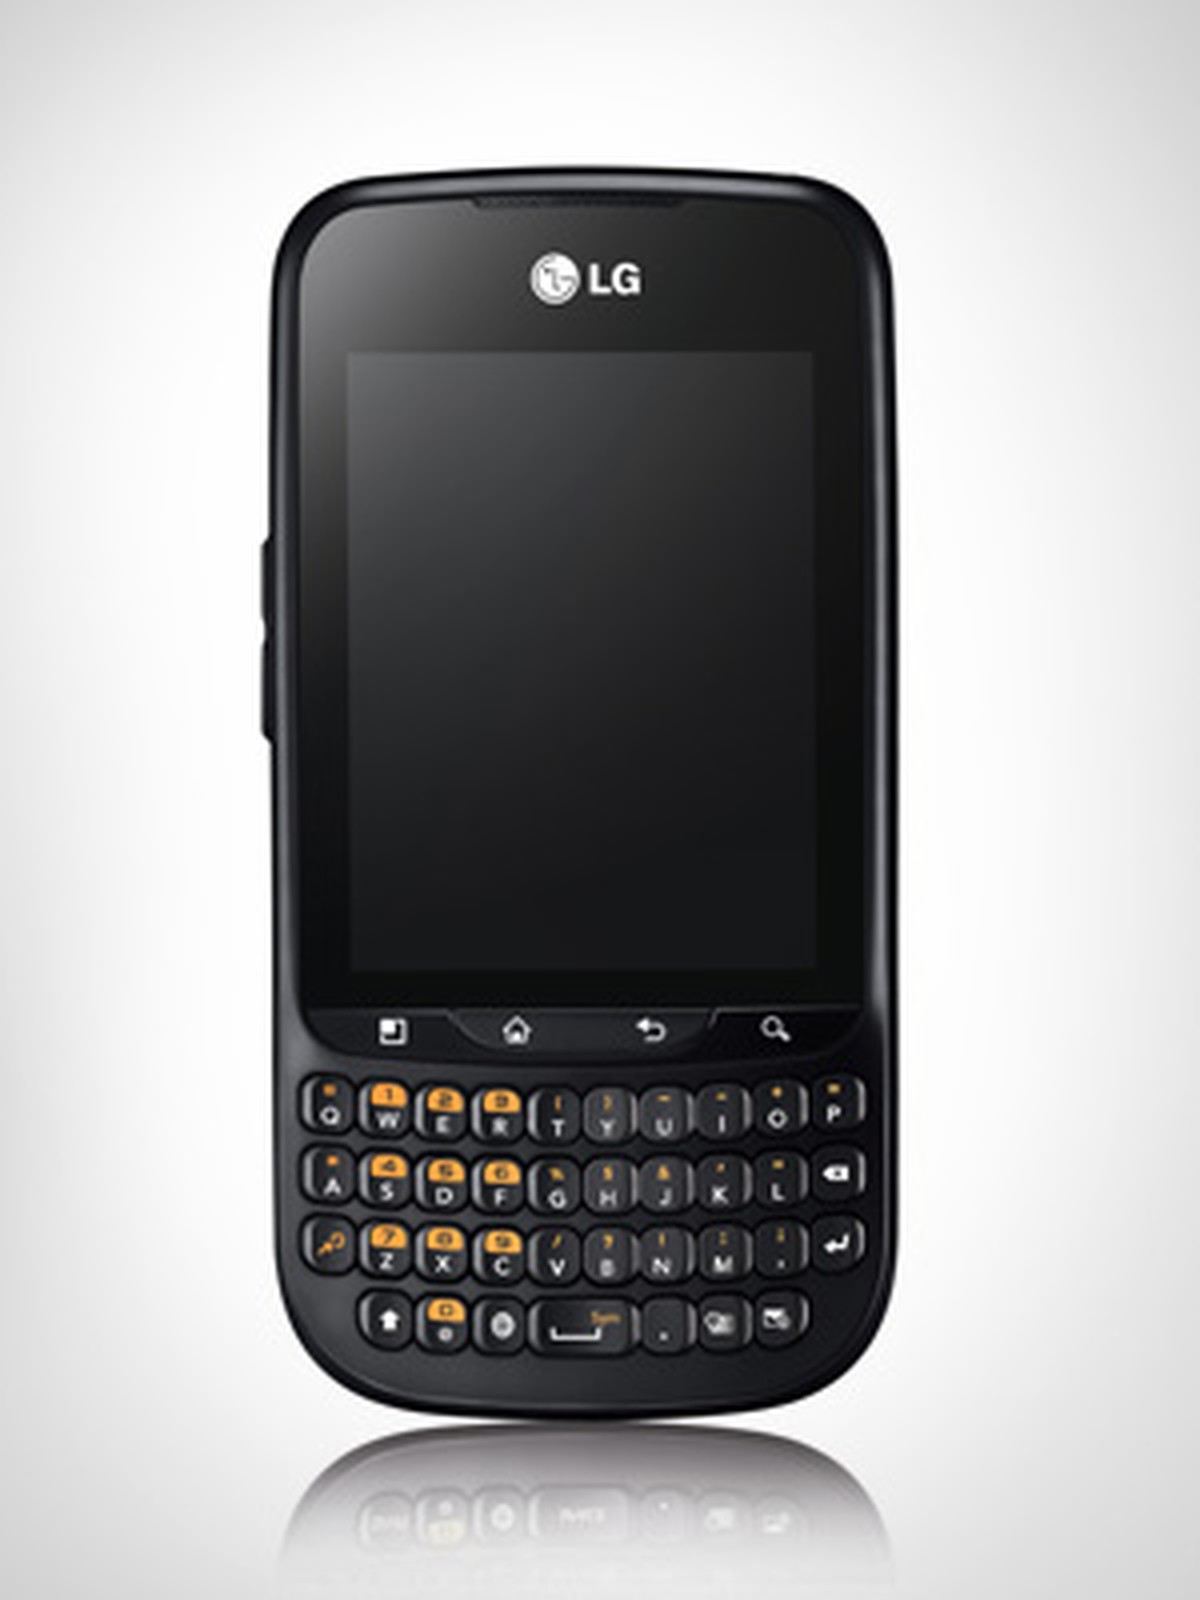 Кнопочный андроид без камеры. Смартфон LG Optimus Pro c660. LG С кверти клавиатурой. Кнопочный смартфон на андроиде. Смартфон с кнопочной клавиатурой и сенсорным.